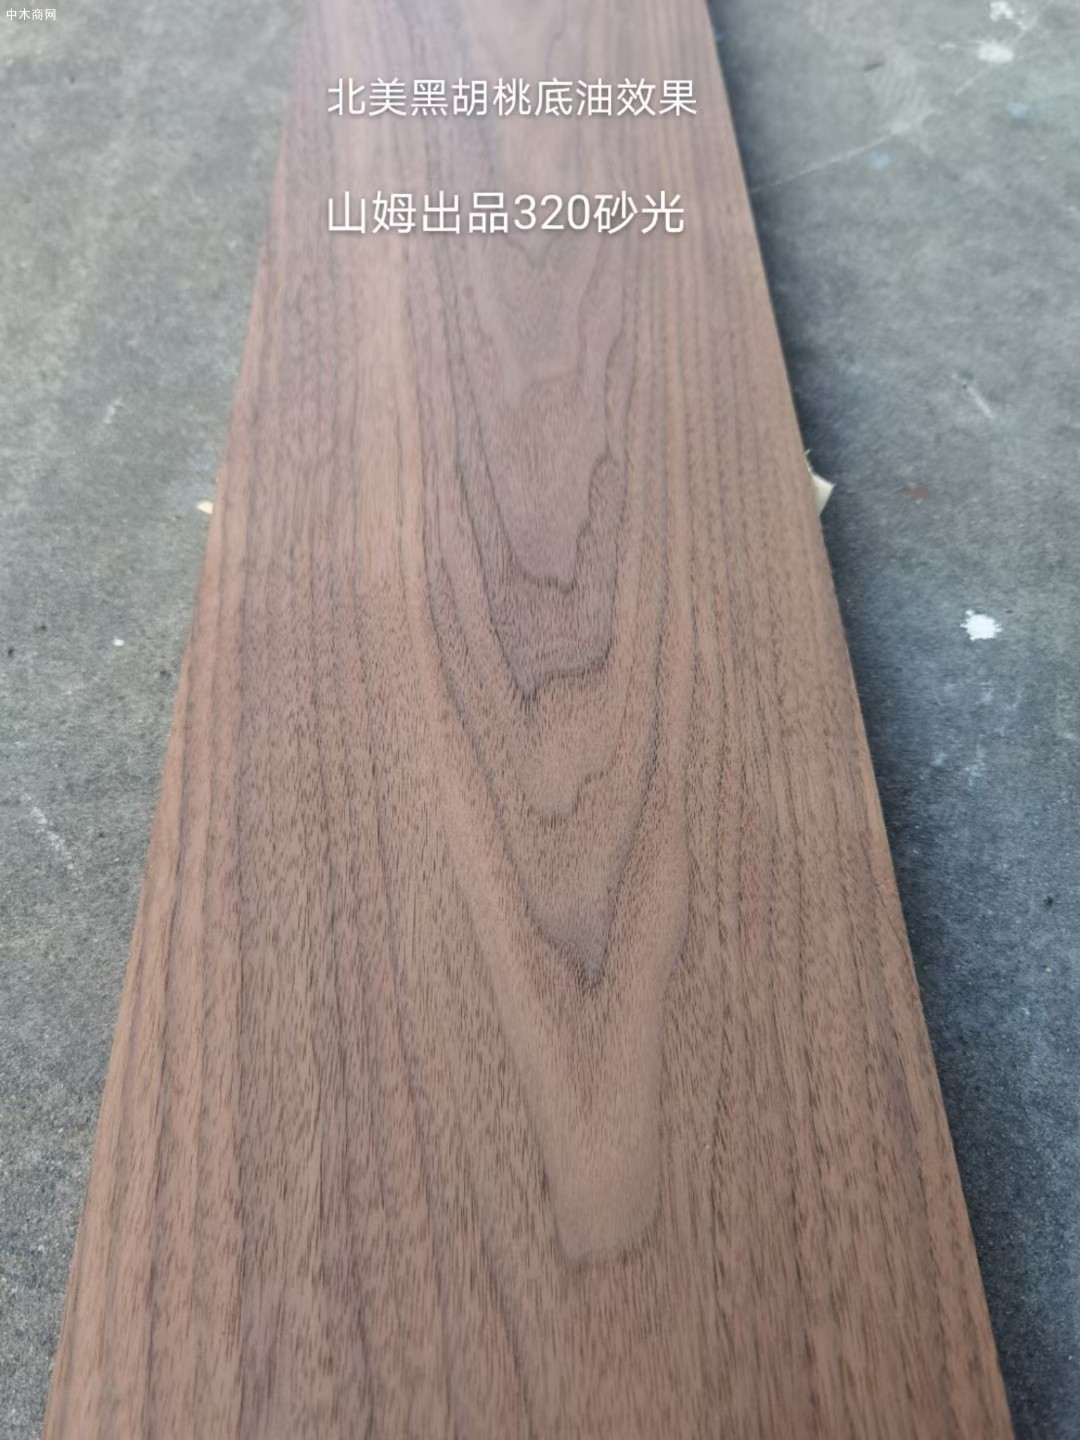 美国黑胡桃木实木家具板材厂家直销求购